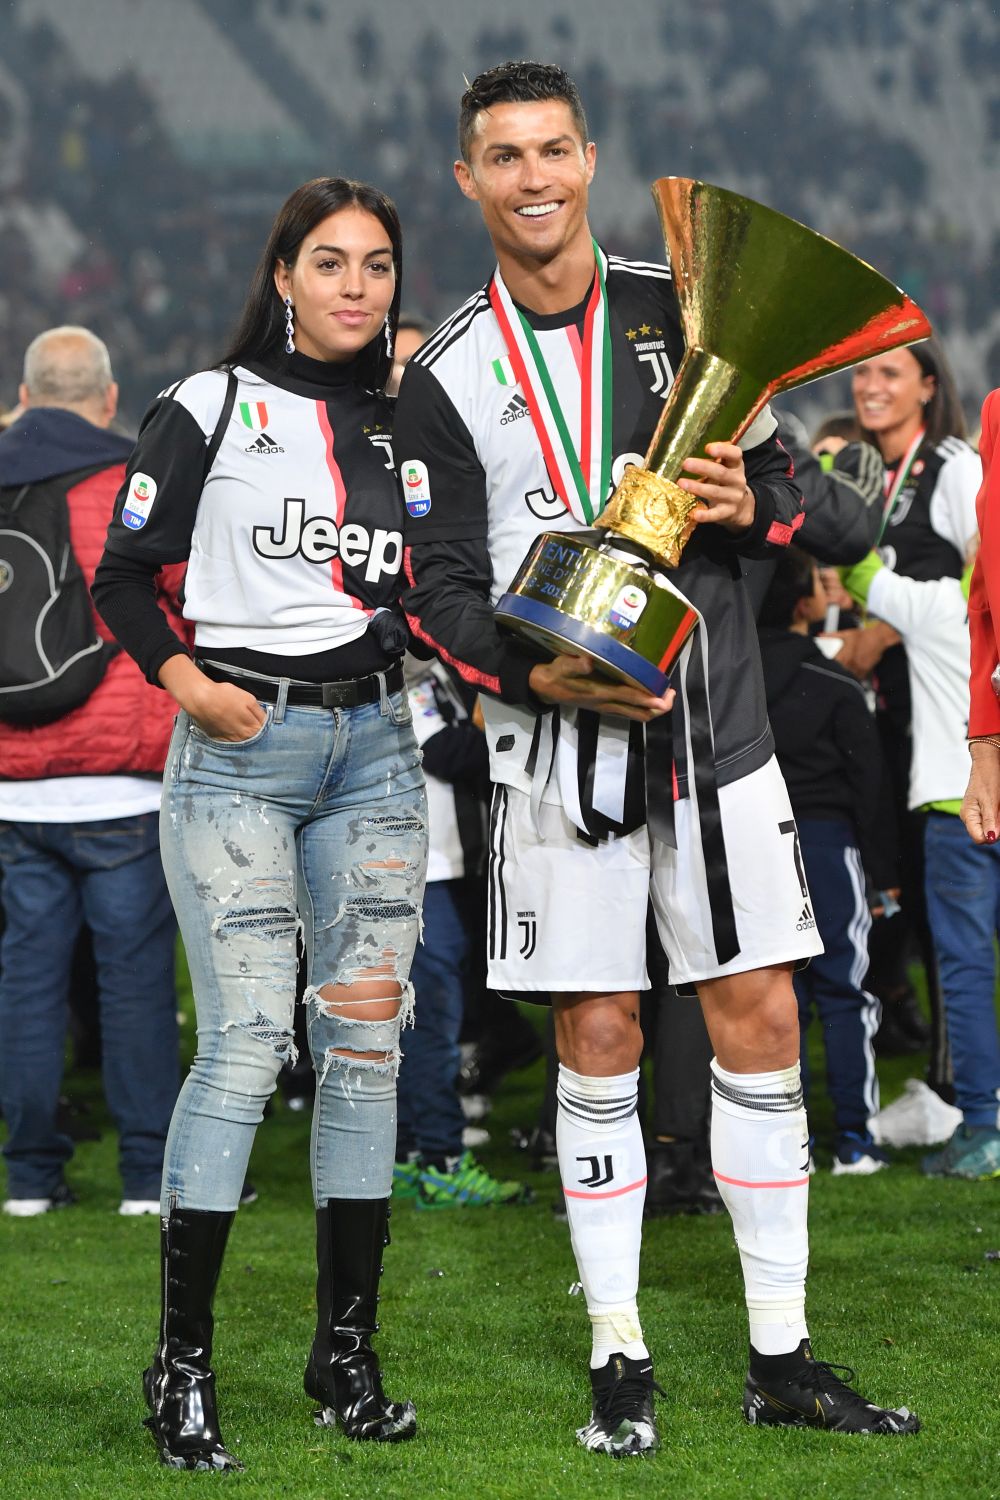 С най-голям потенциал за печалби в социалната мрежа са футболистът Кристиано Роналдо и половинката му, моделката Джорджина Родригес. Двойката има общо 273,9 милиона последователи и може да печели до 669 852 лири на публикация в Инстаграм.